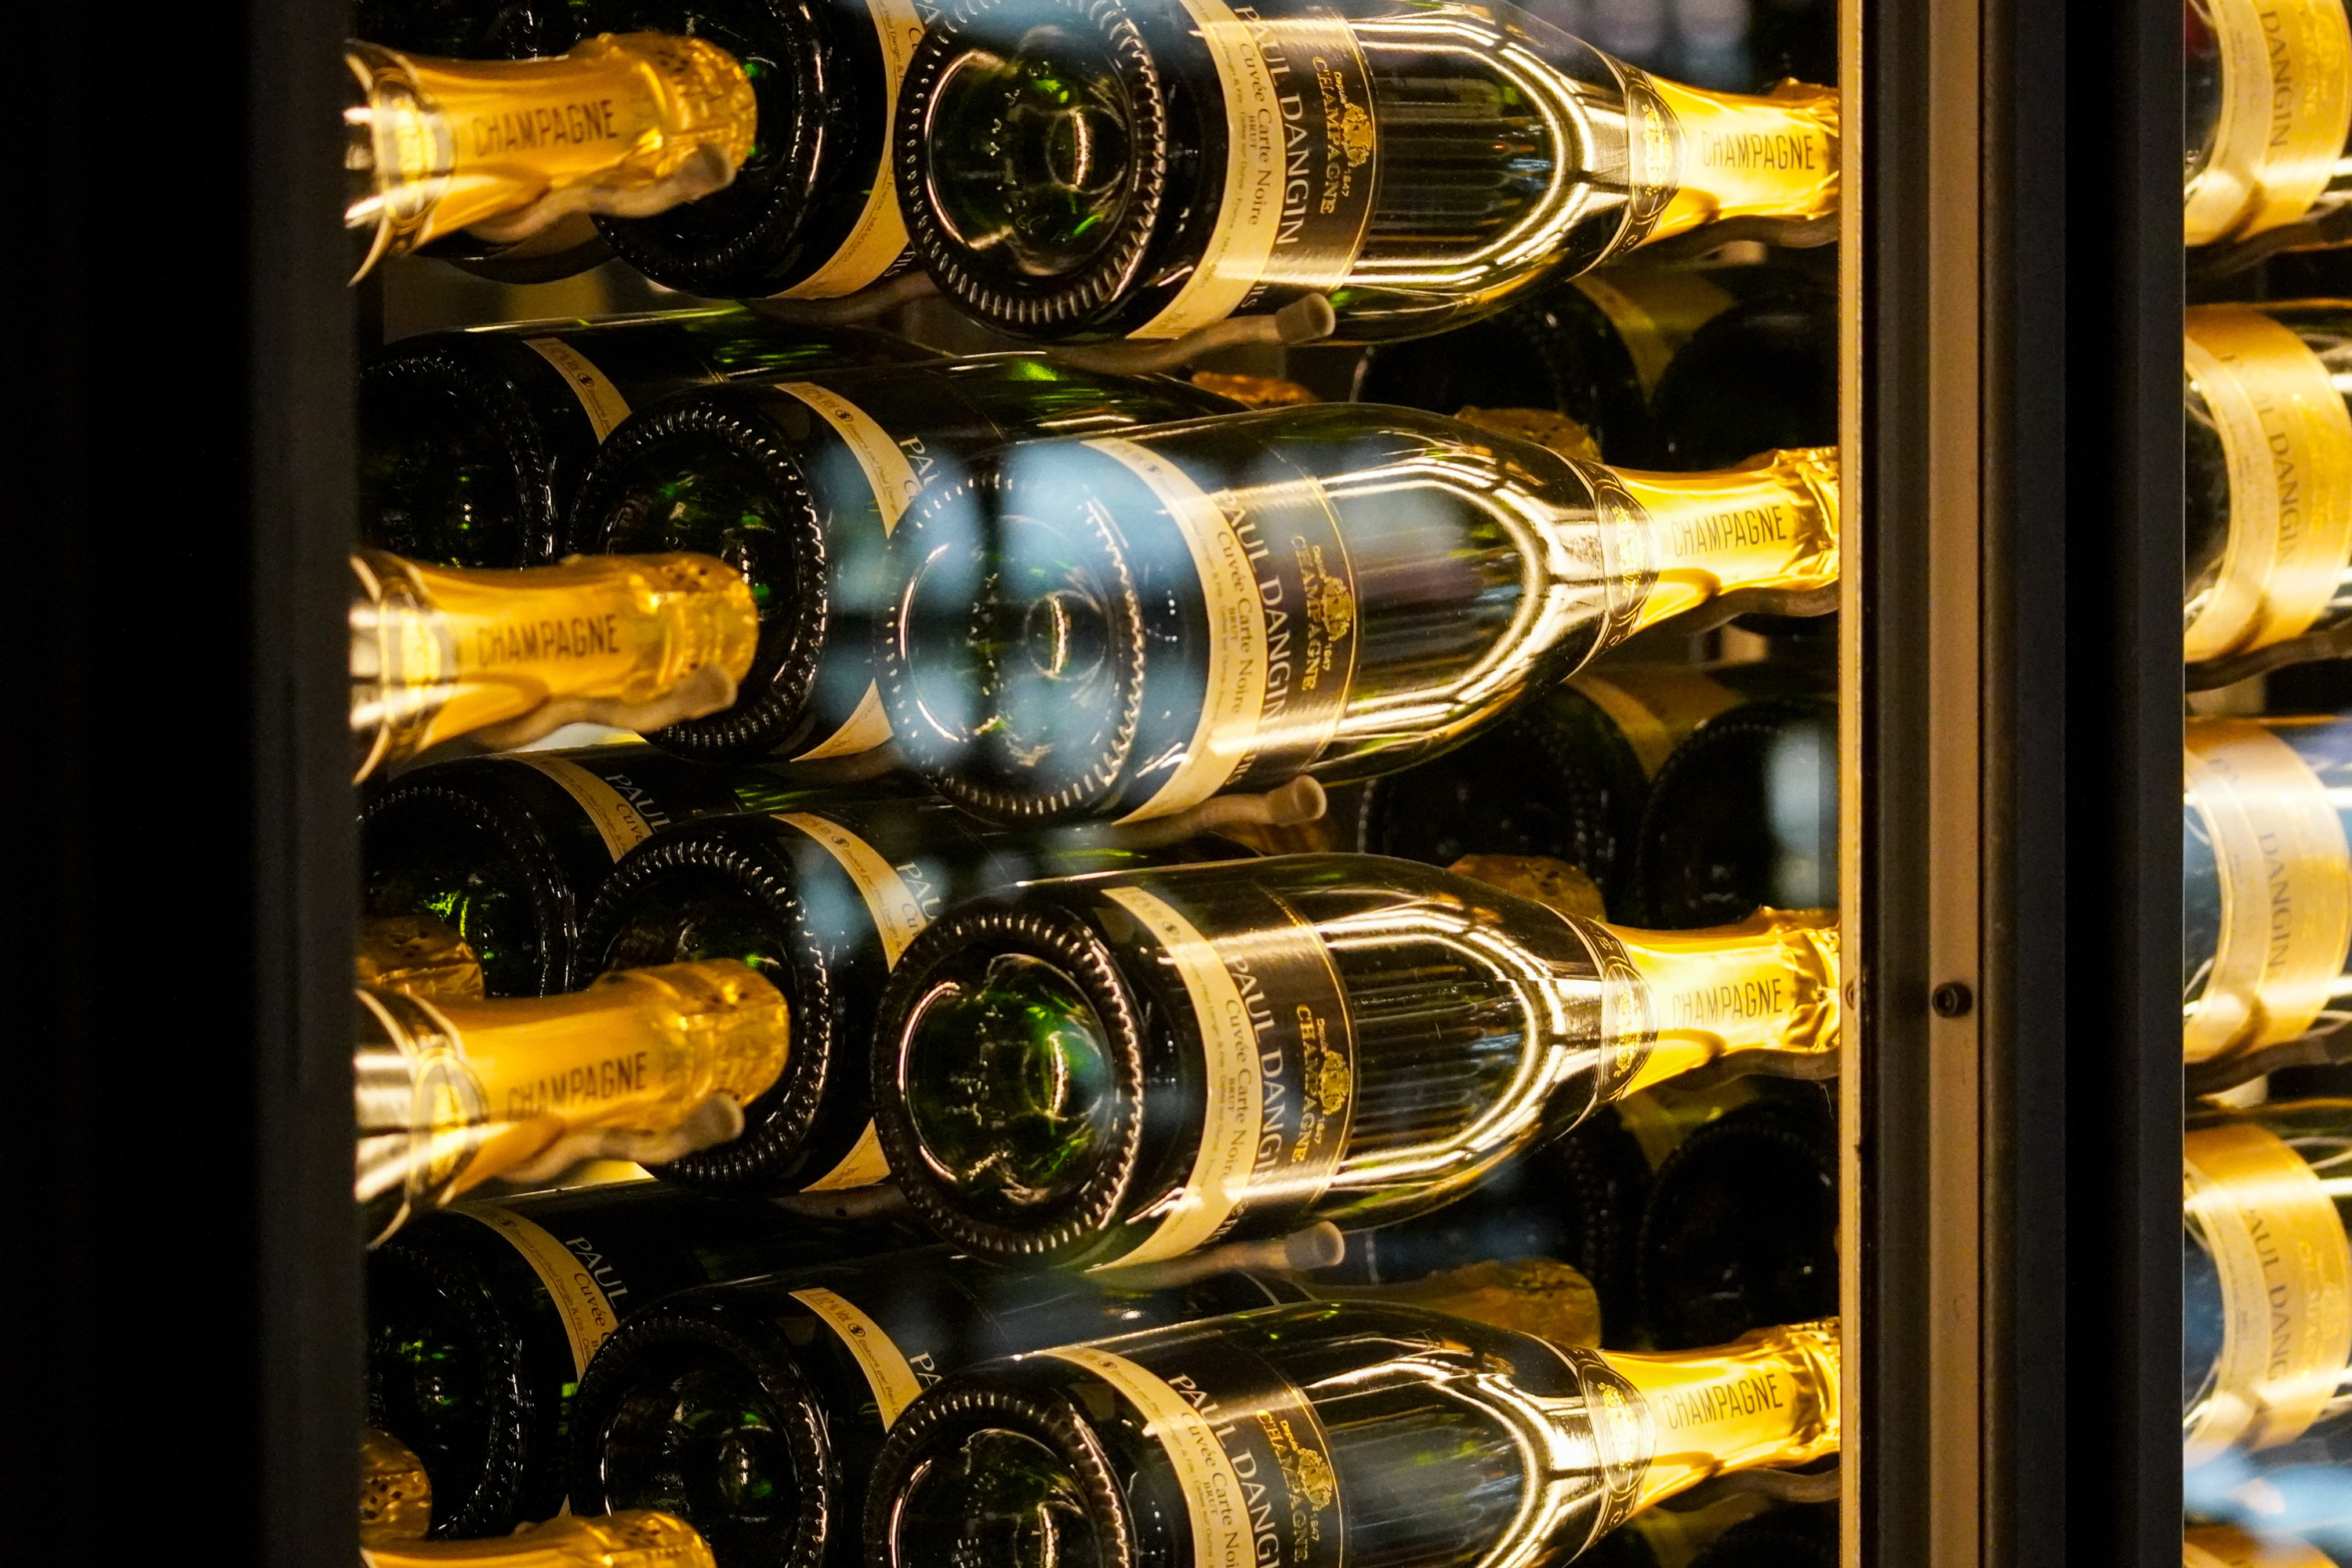 Un bon réfrigérateur à vin vaut son pesant d'or, surtout pour les occasions haut de gamme - mais vous les voyez rarement sur la pelouse.